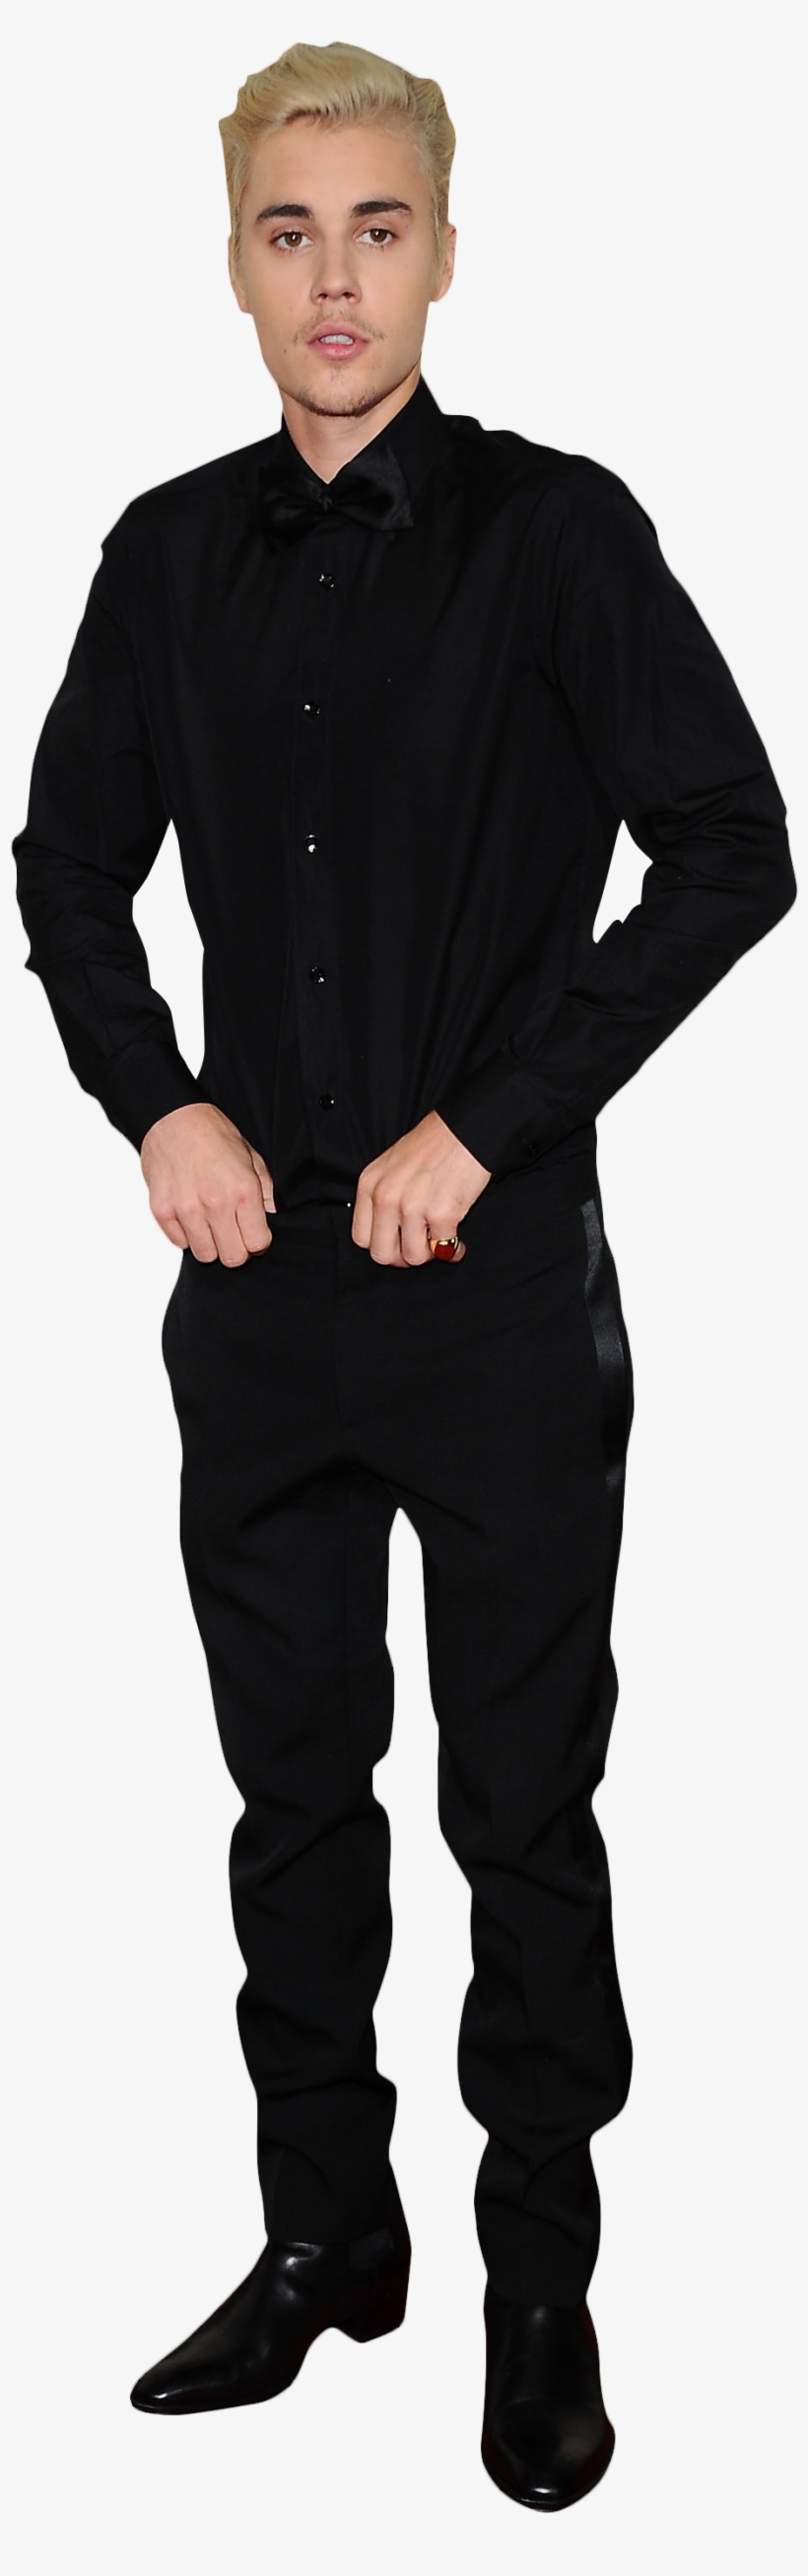 Justin Bieber Clipart Suit Png - Black Slim Fit 3 Piece Suit, transparent png #637915